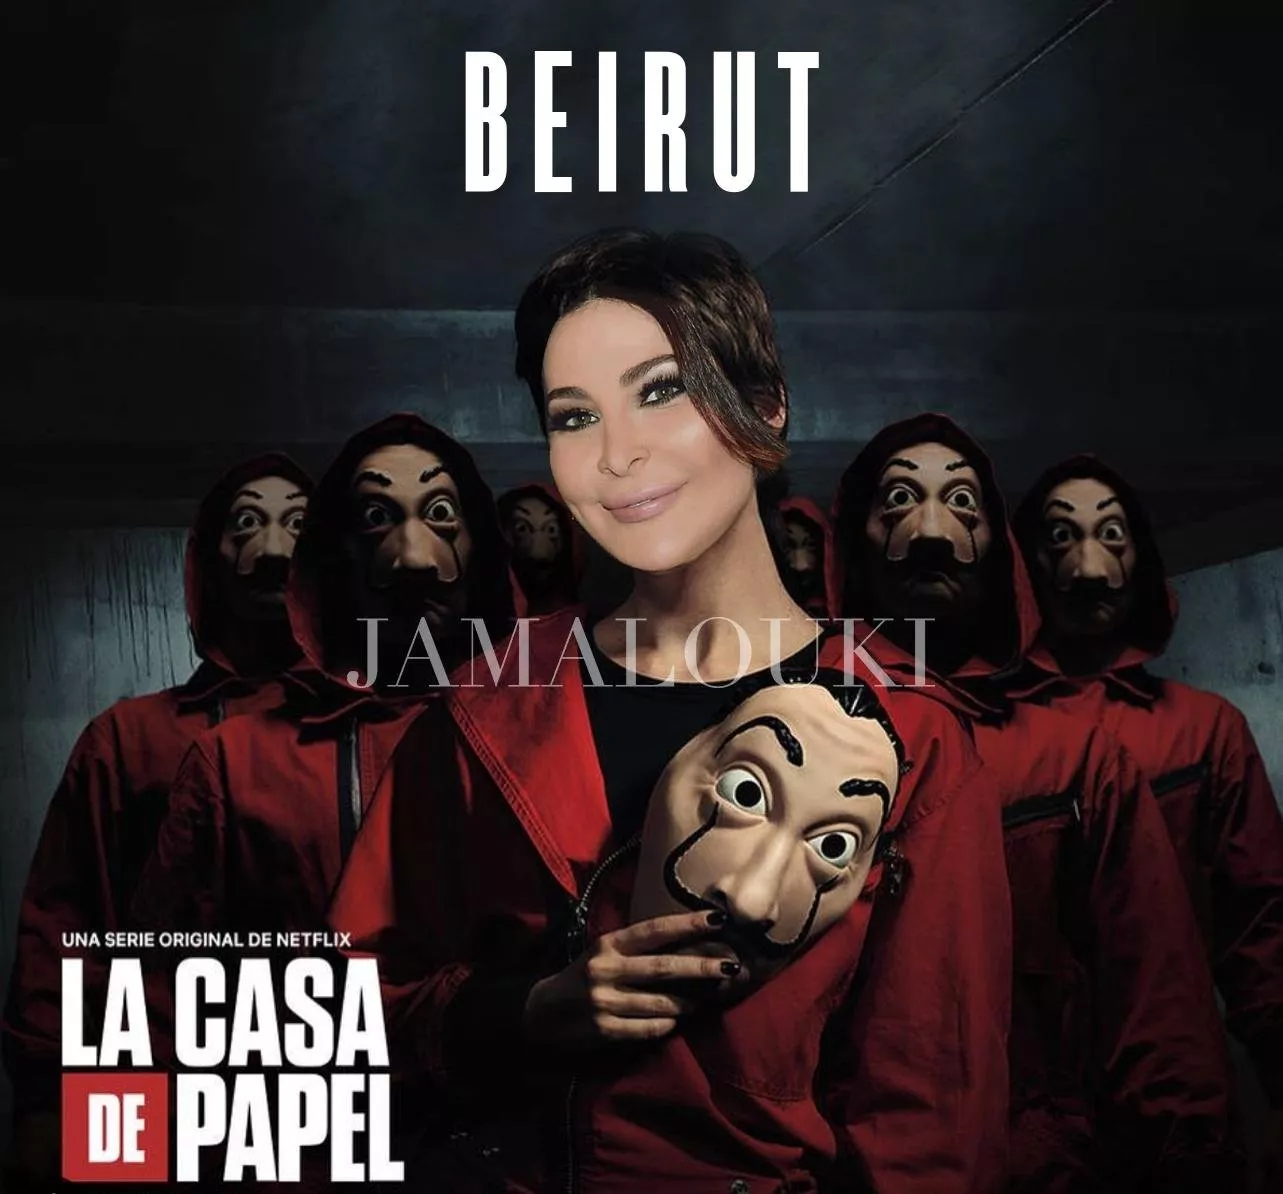 كيف ستبدو اليسا في حال مشاركتها في مسلسل La Casa De Papel؟